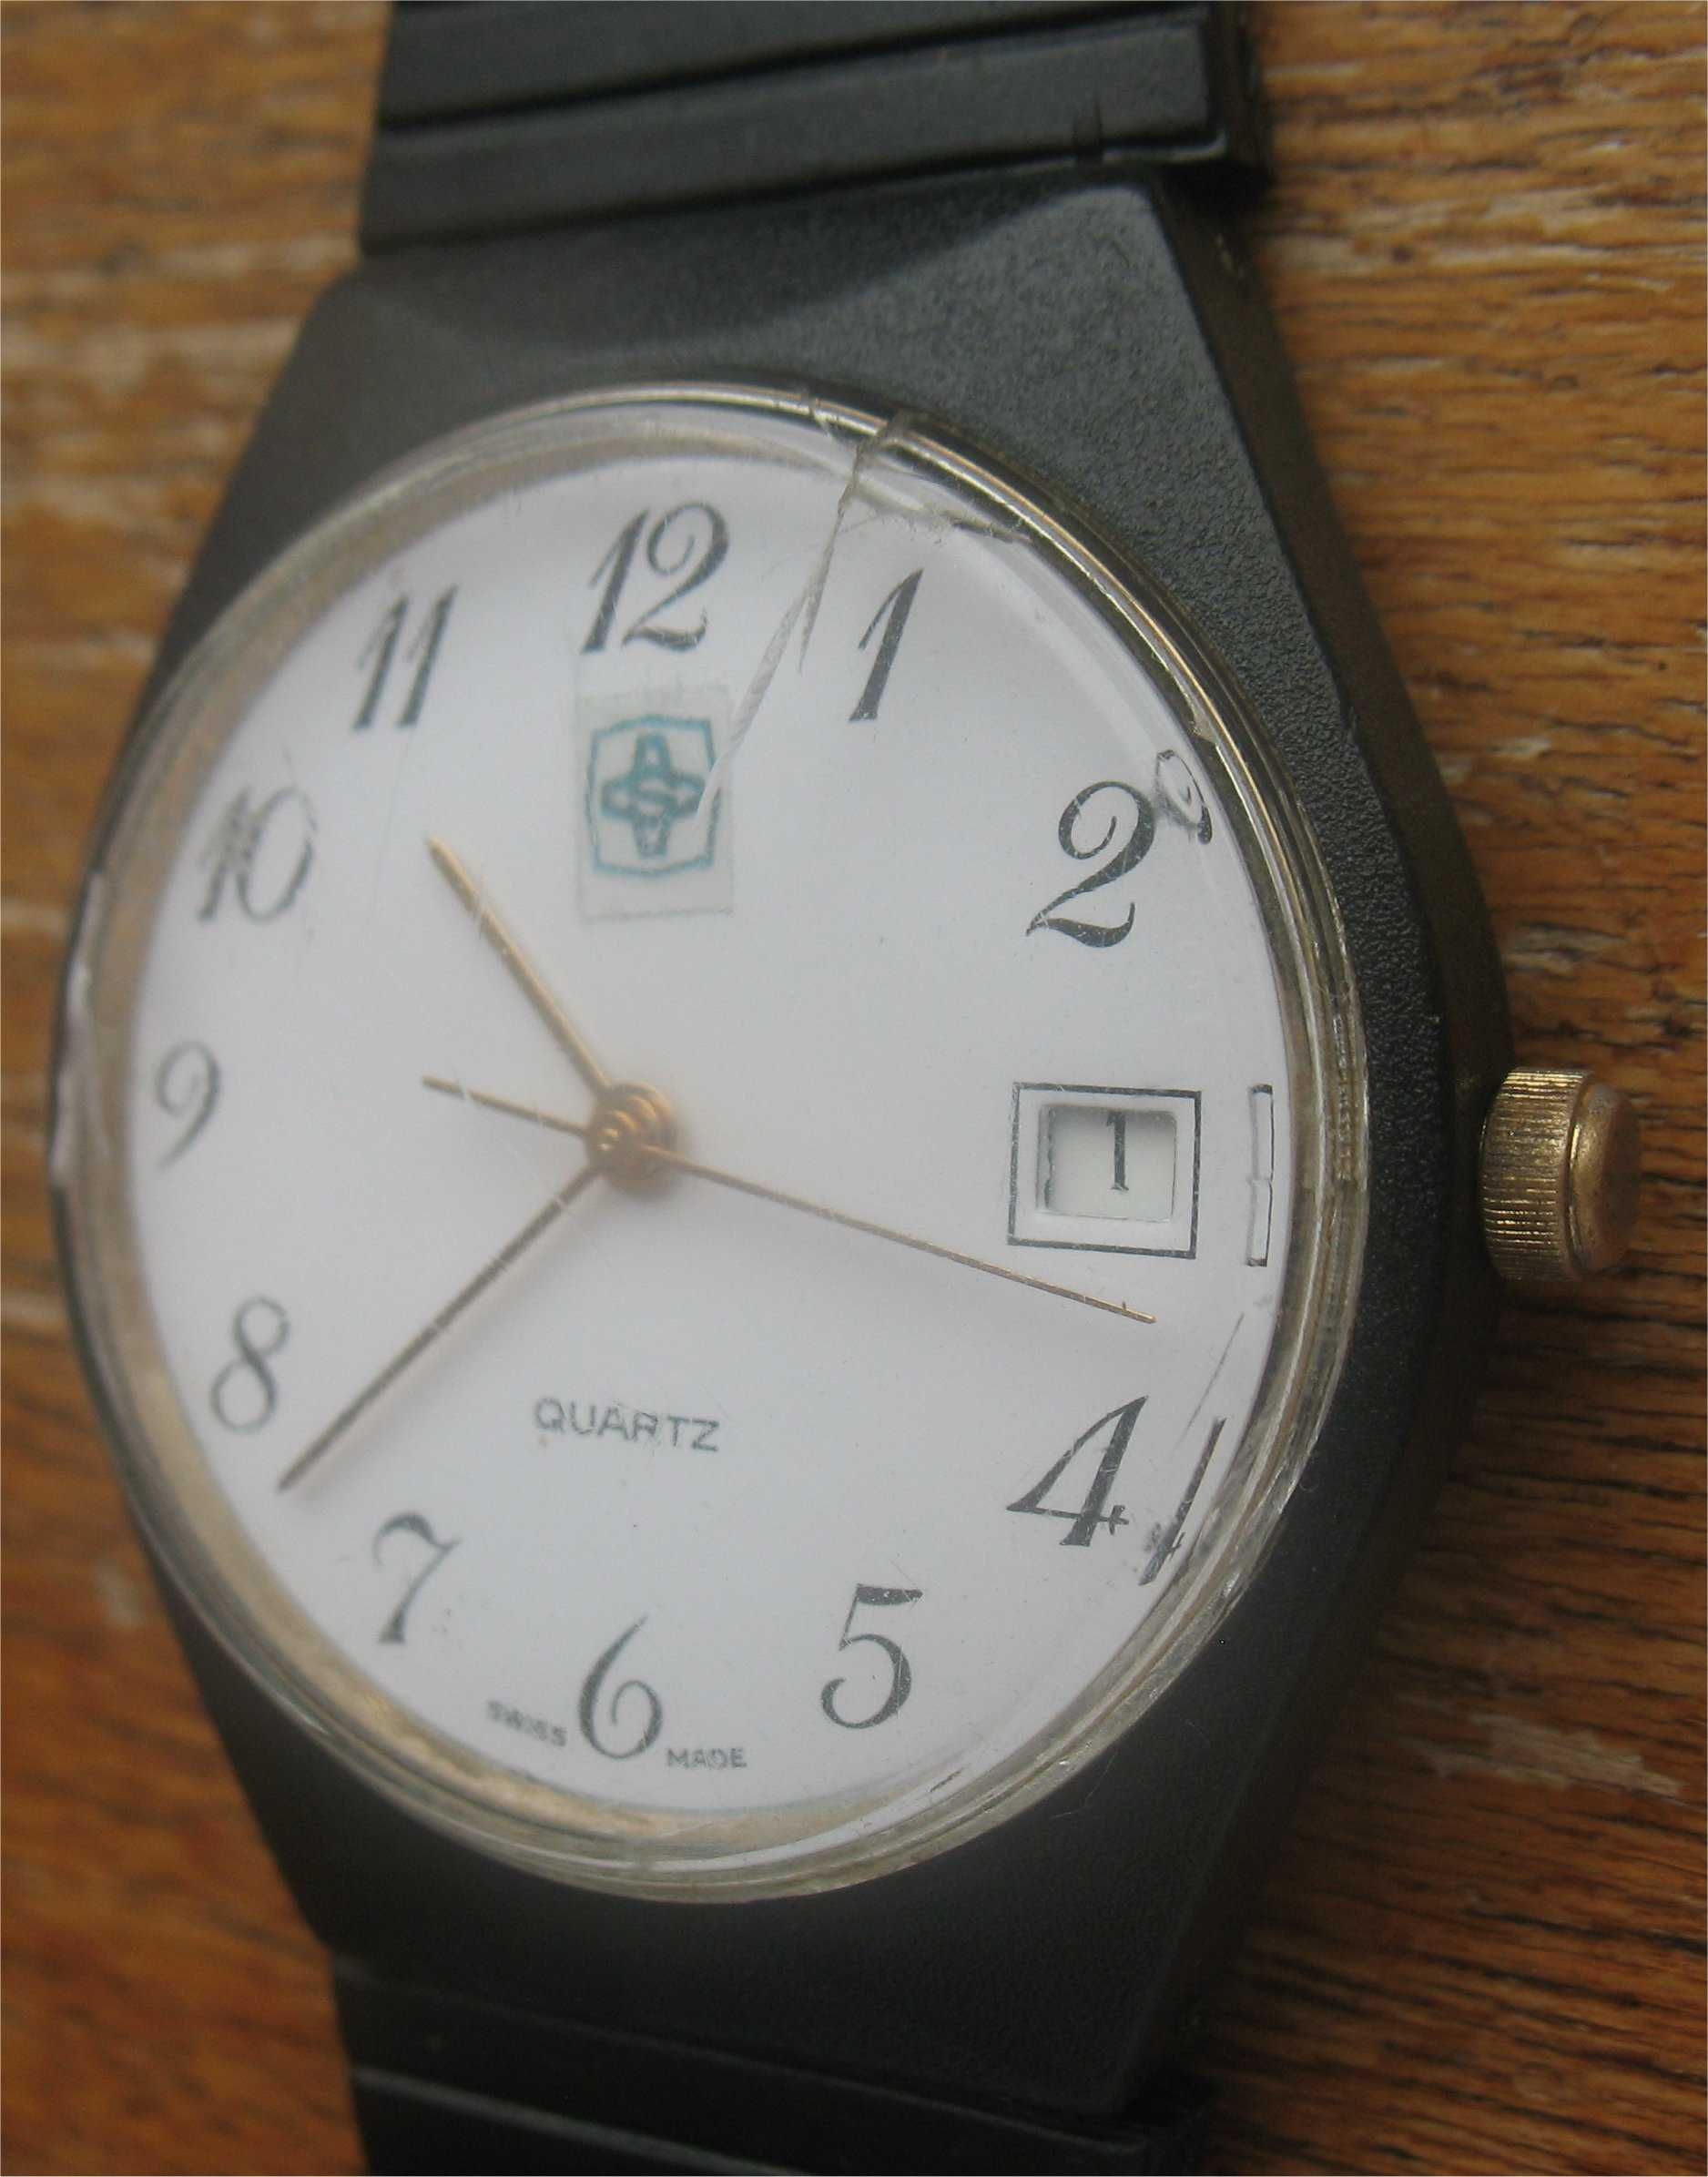 Relógio de pulso promocional da Salvador Caetano - Swiss Made